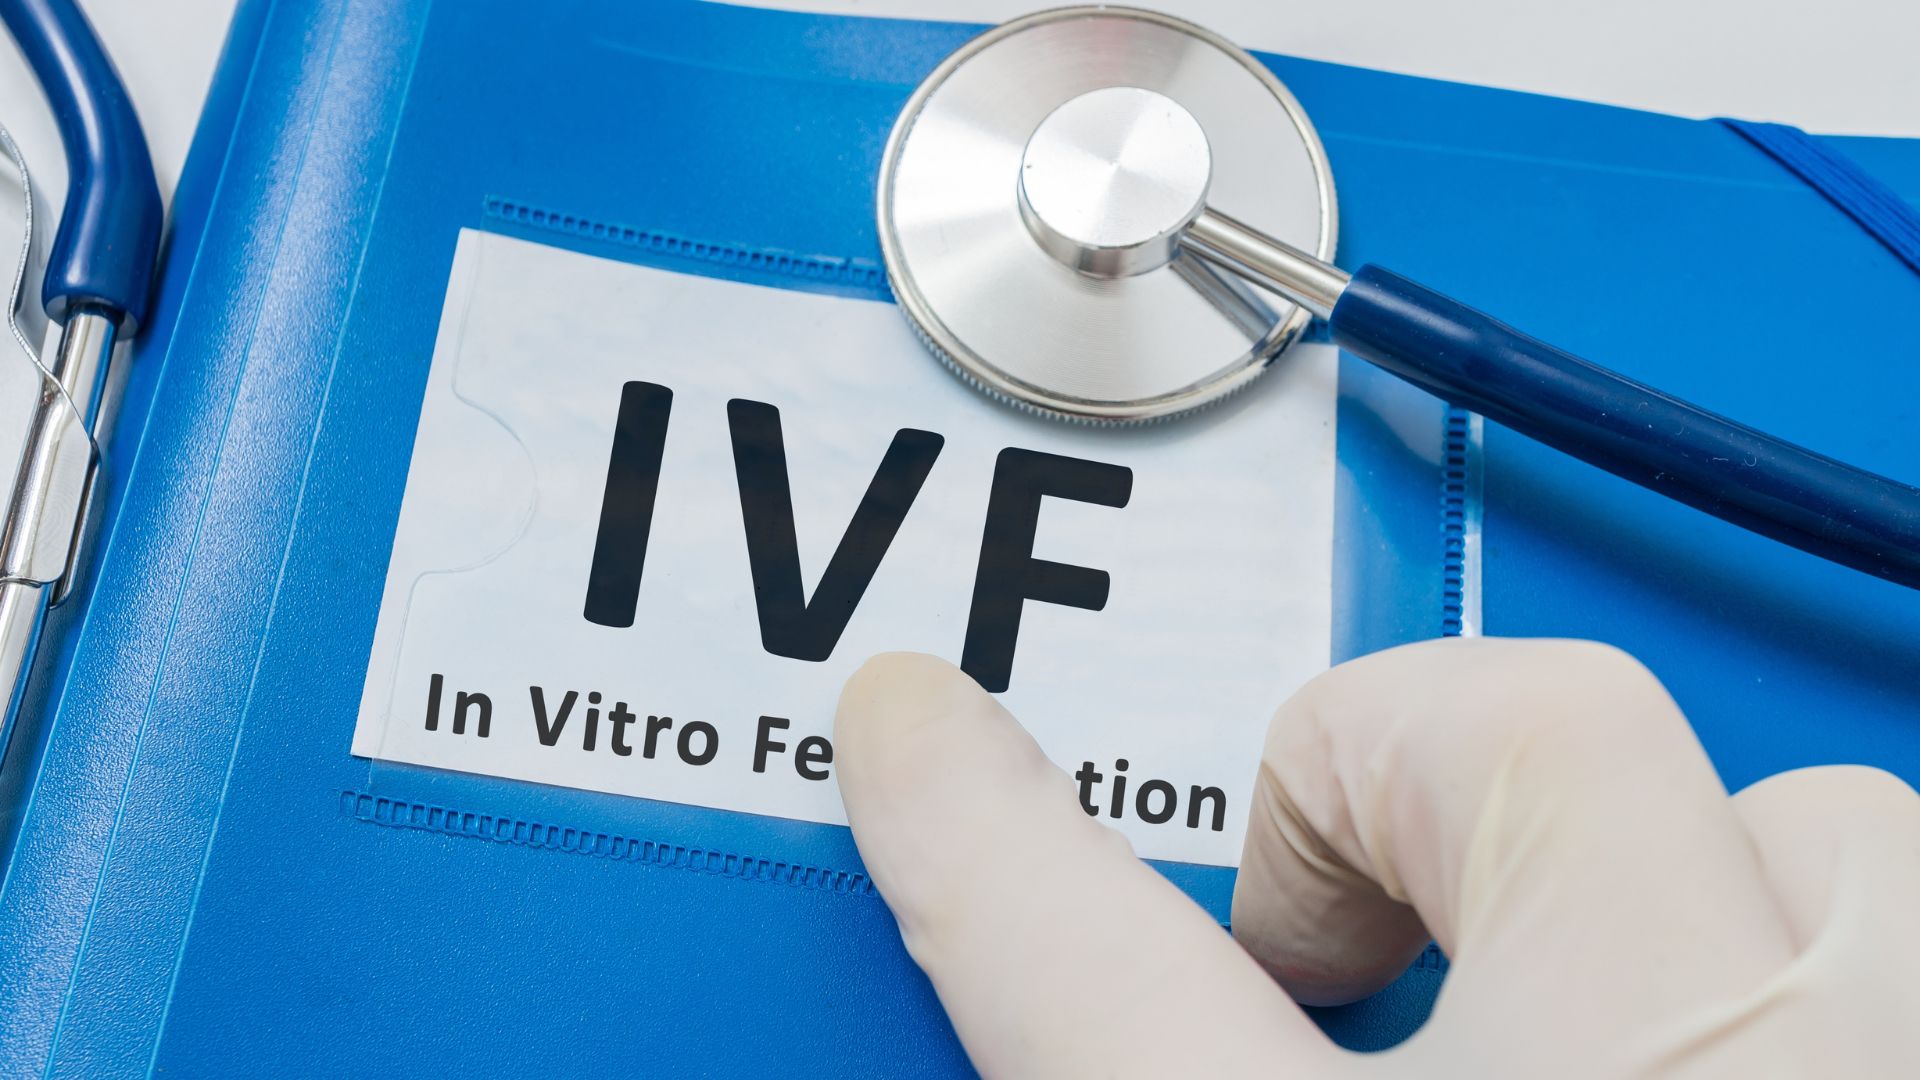 IVF Failure